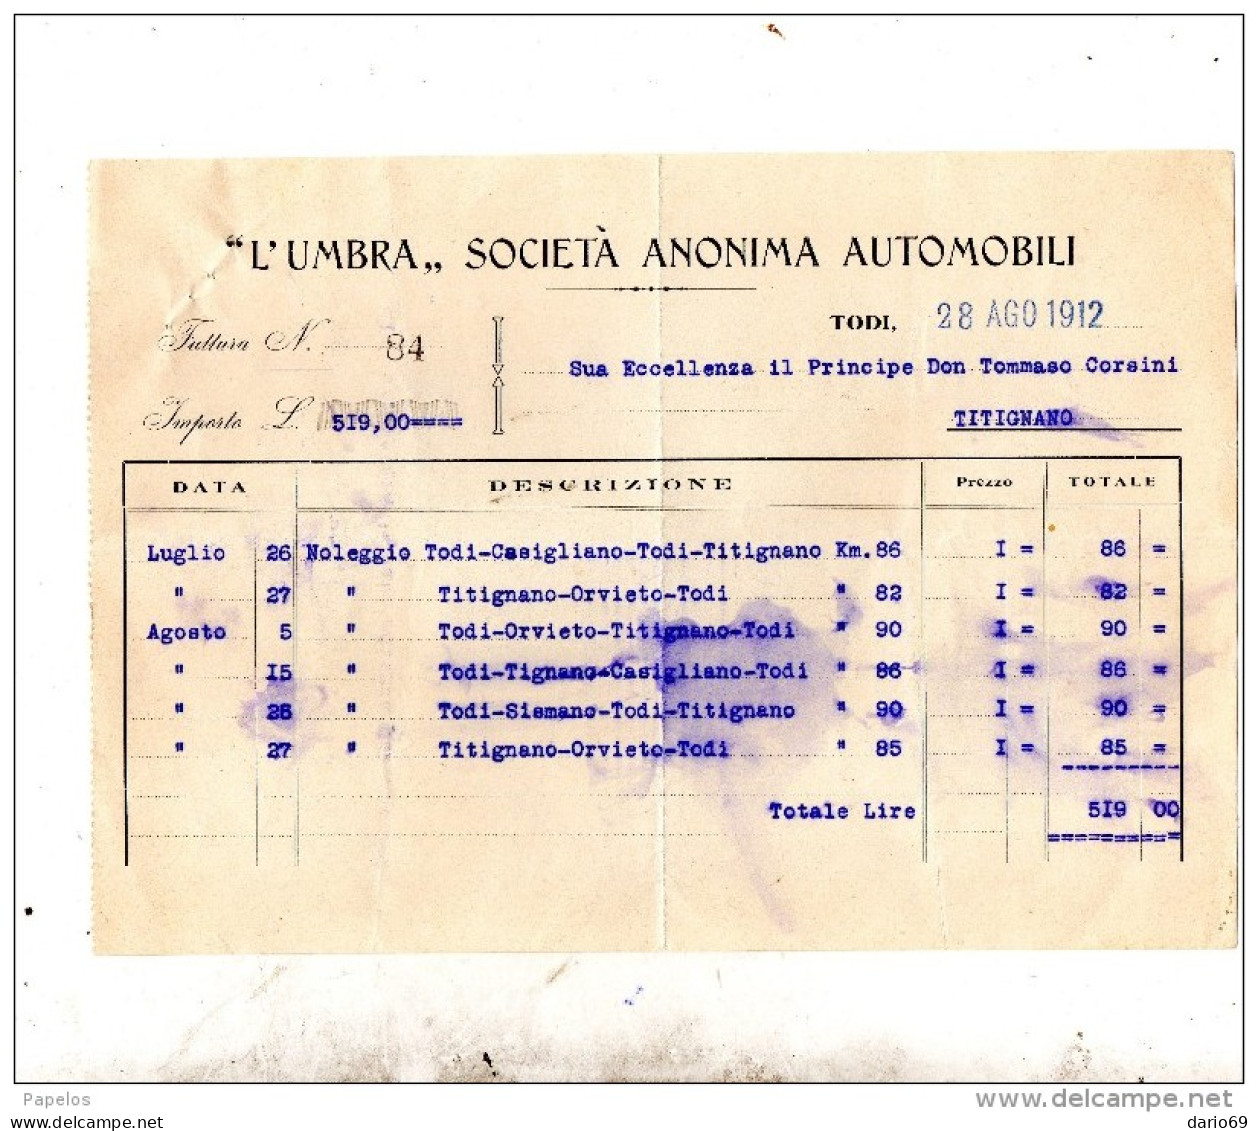 1912 TODI - SOCIETÀ ANONIMA AUTOMOBILI - Italien